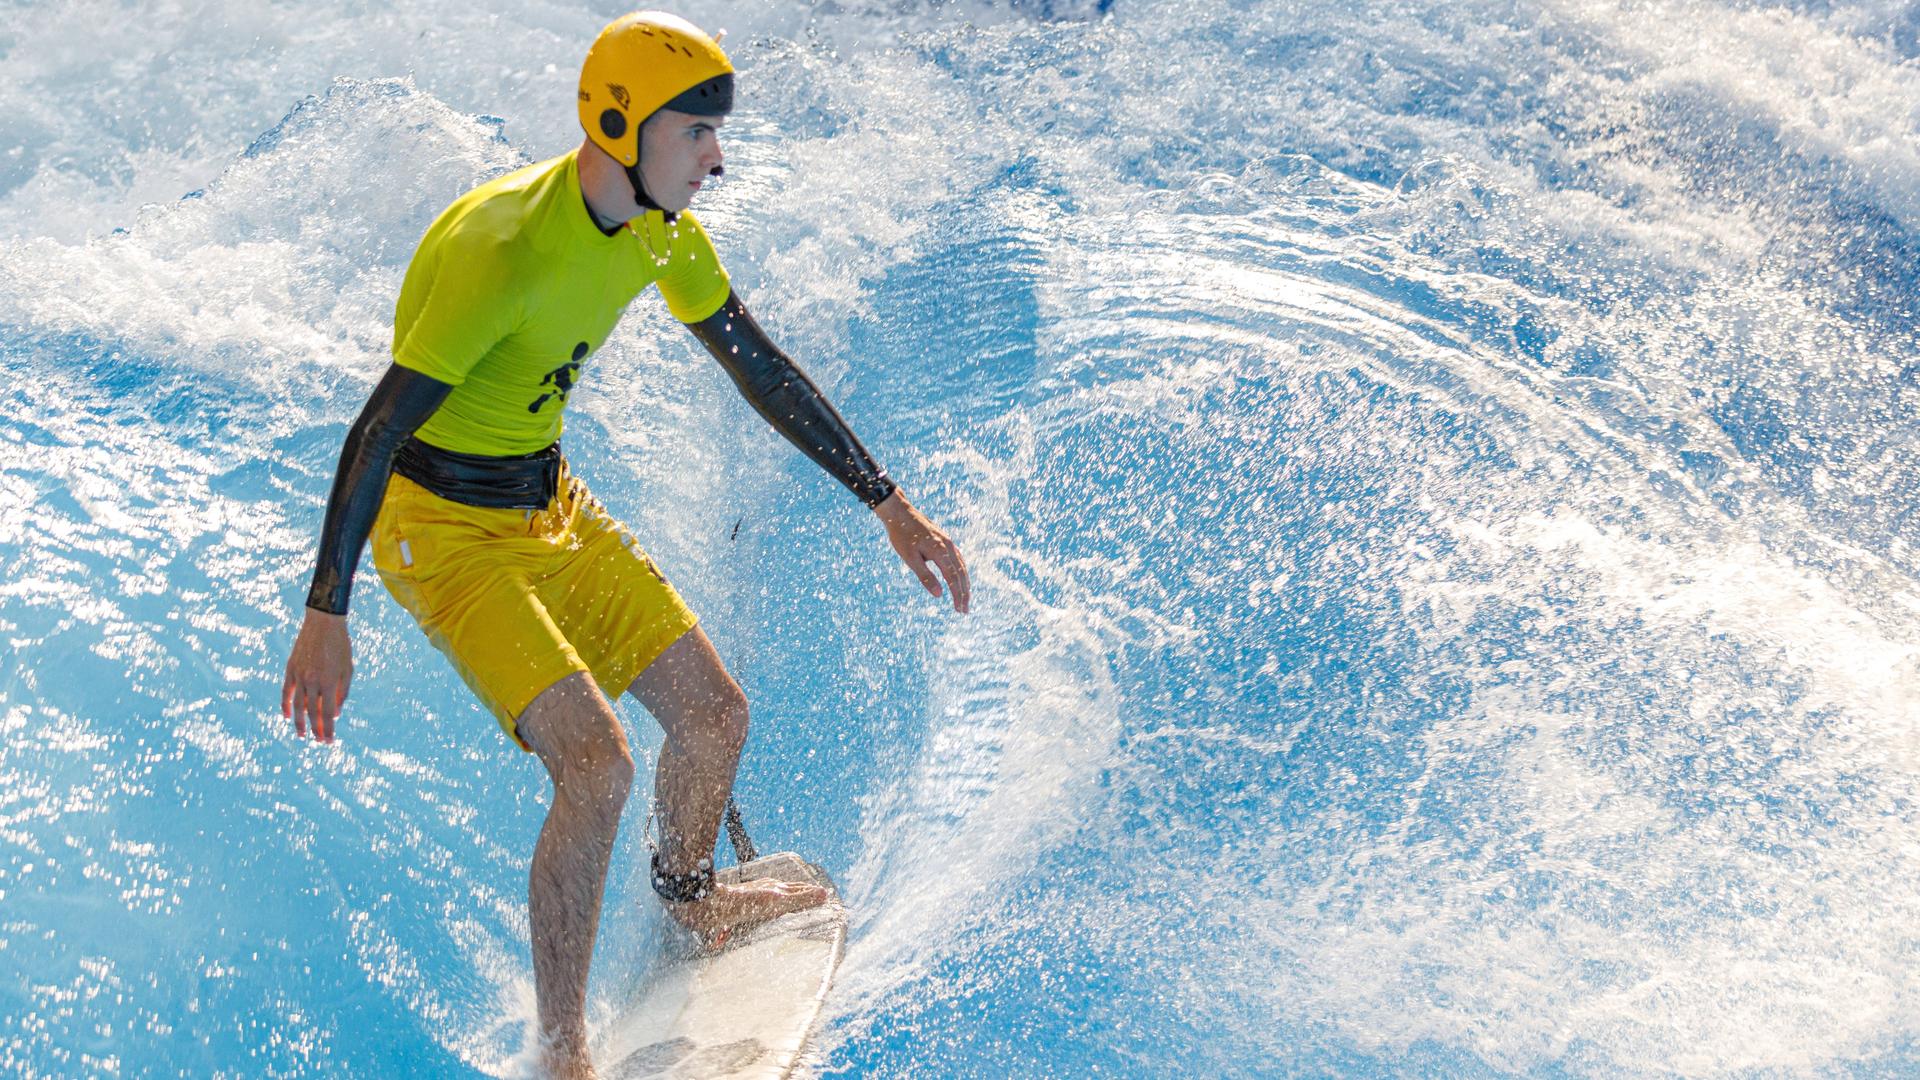 Der blinde Surfer Ben Neumann in der Surfhalle Rheinriff in Meerbusch